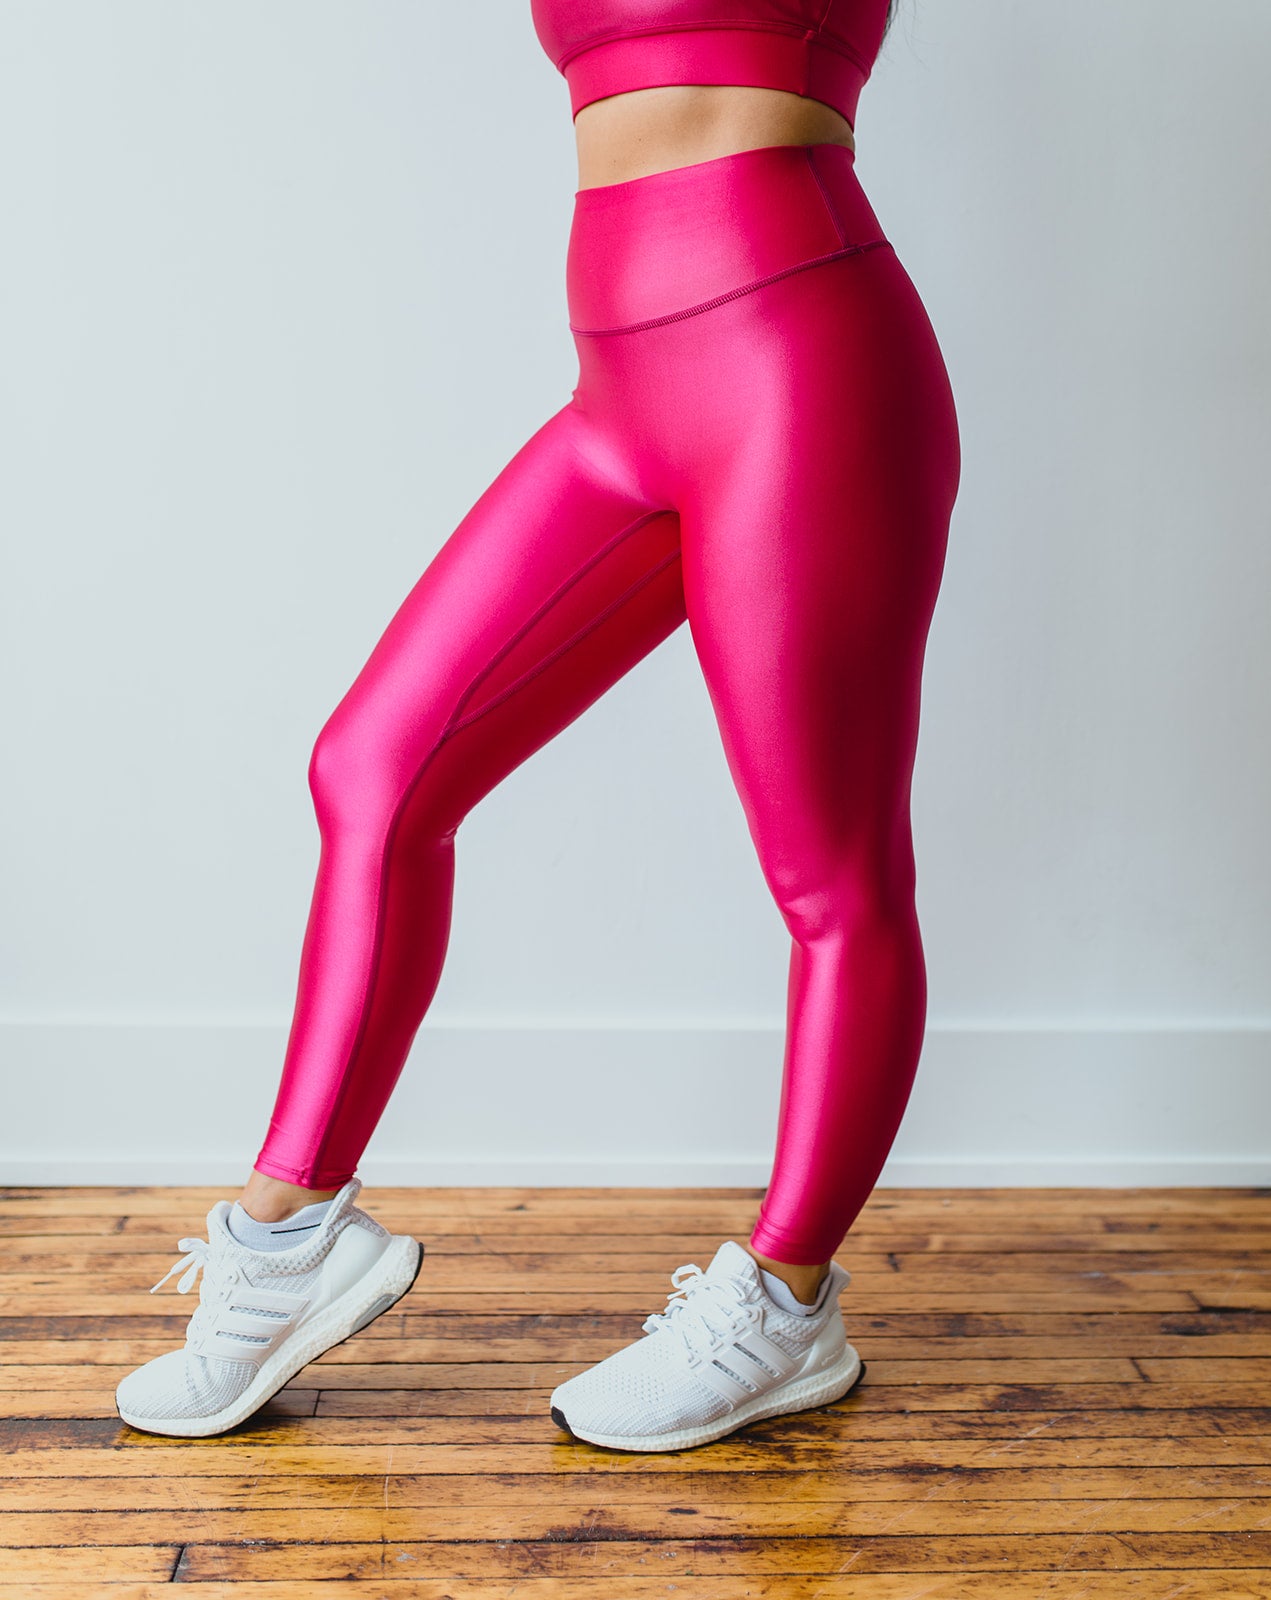 Poppin' Pink Legging – Erin Oprea Basics